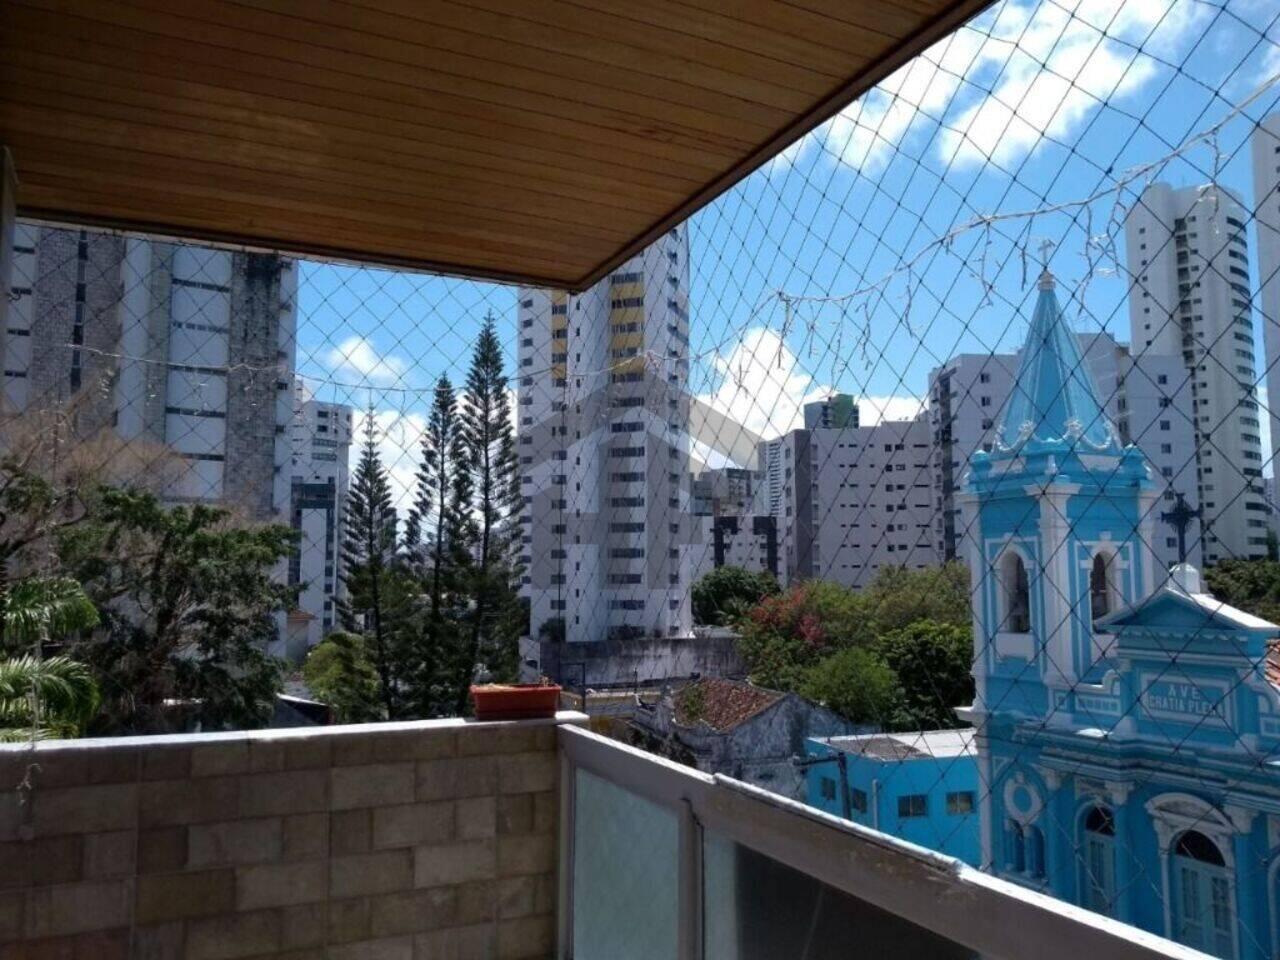 Apartamento Graças, Recife - PE